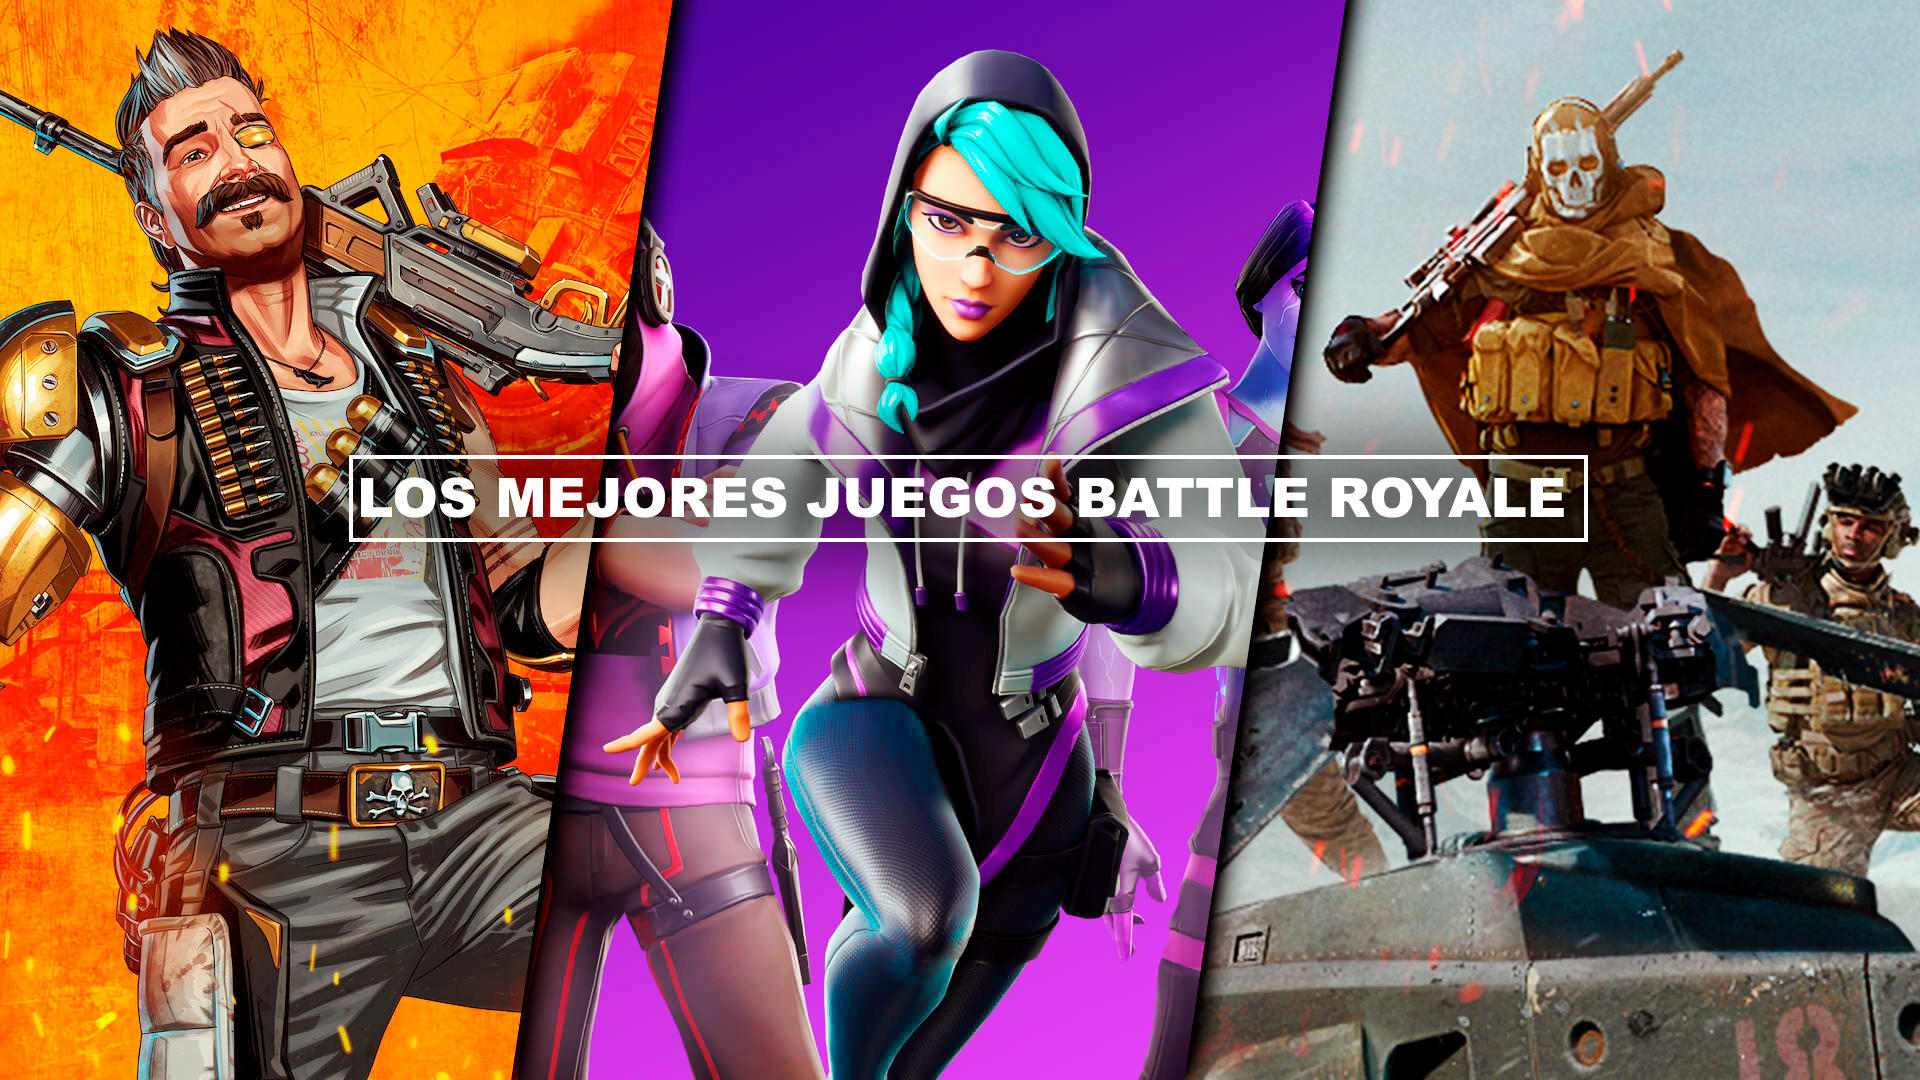 Los MEJORES juegos Battle Royale para PC, PS4, PS5, Xbox Series, Xbox One, m�viles...